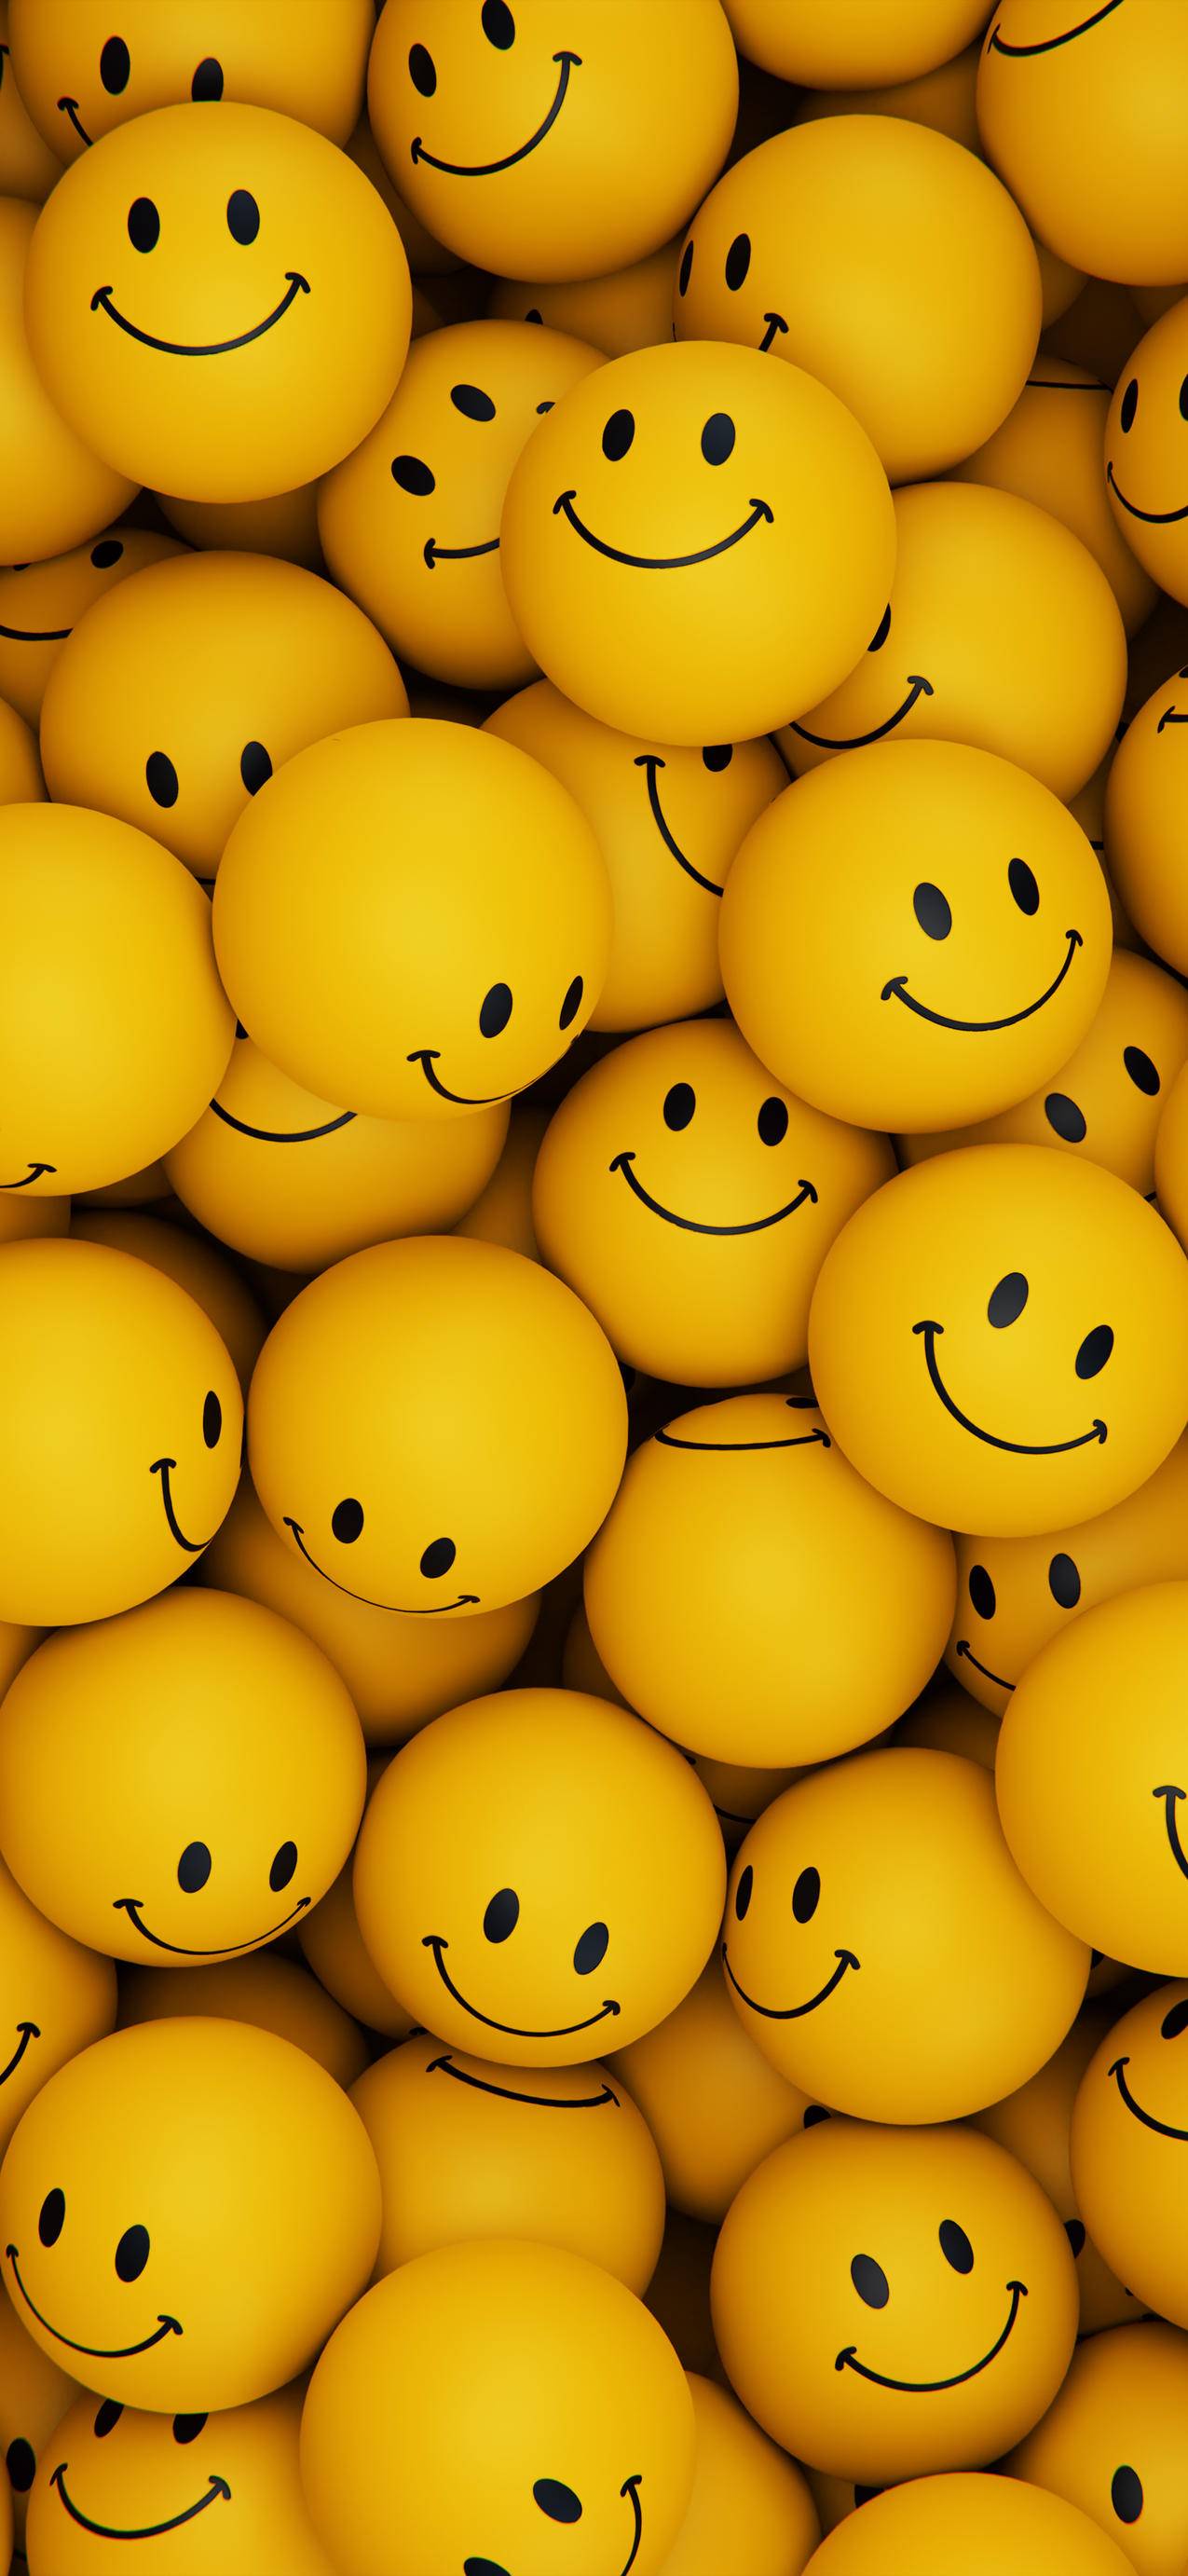 emoji表情简洁壁纸 - 哔哩哔哩